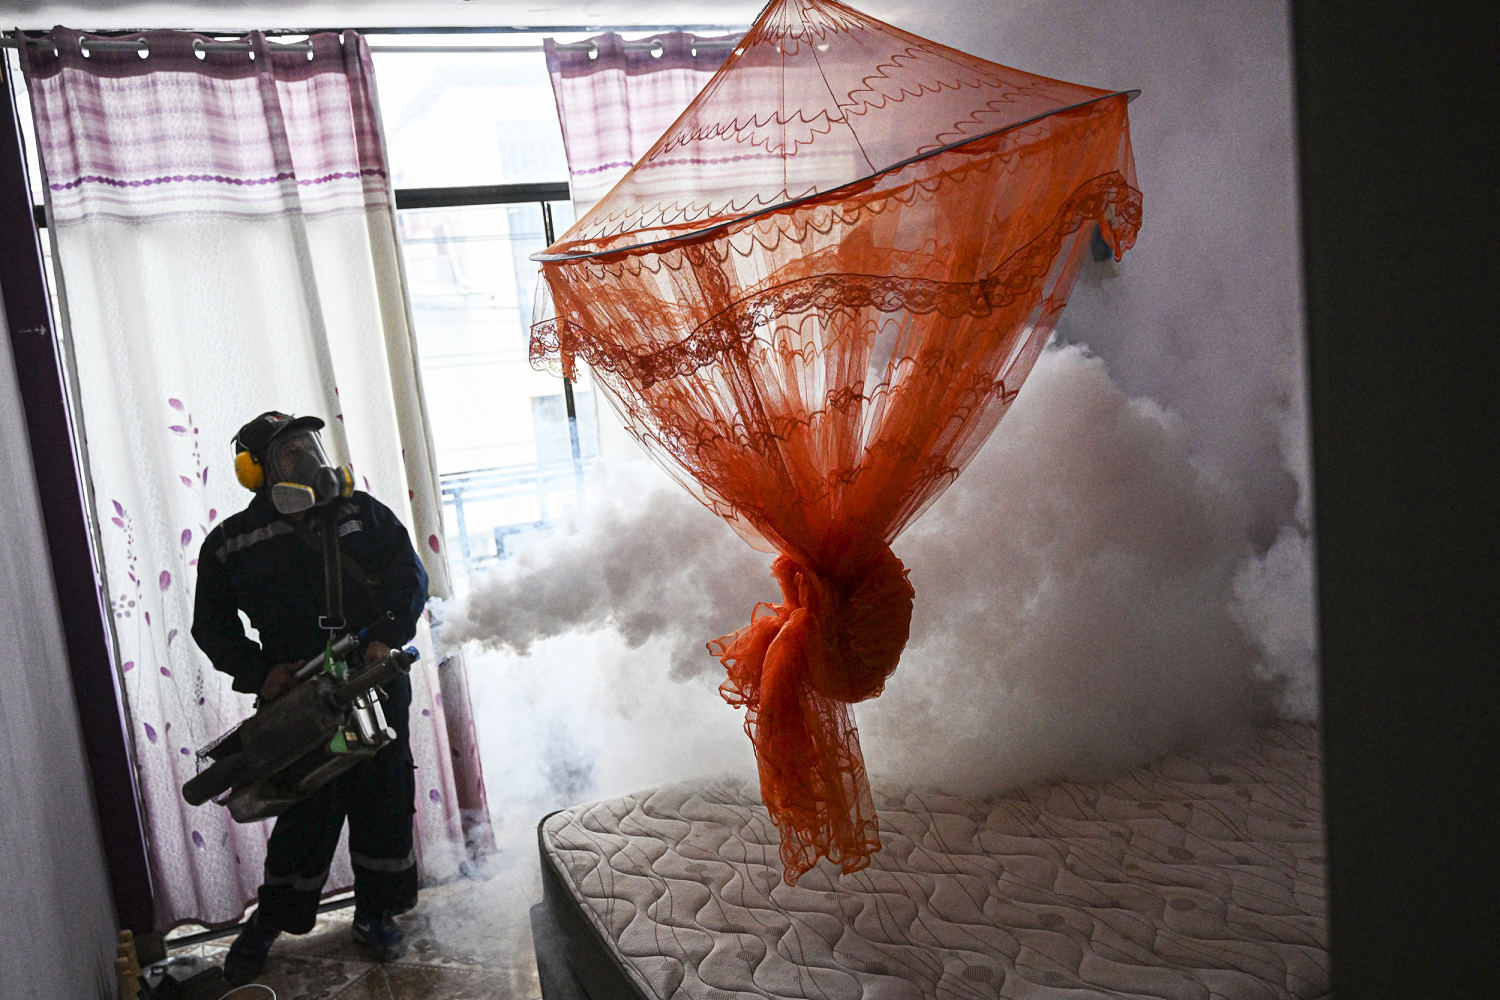 Dengue cases break records in Americas amid warmer temperatures